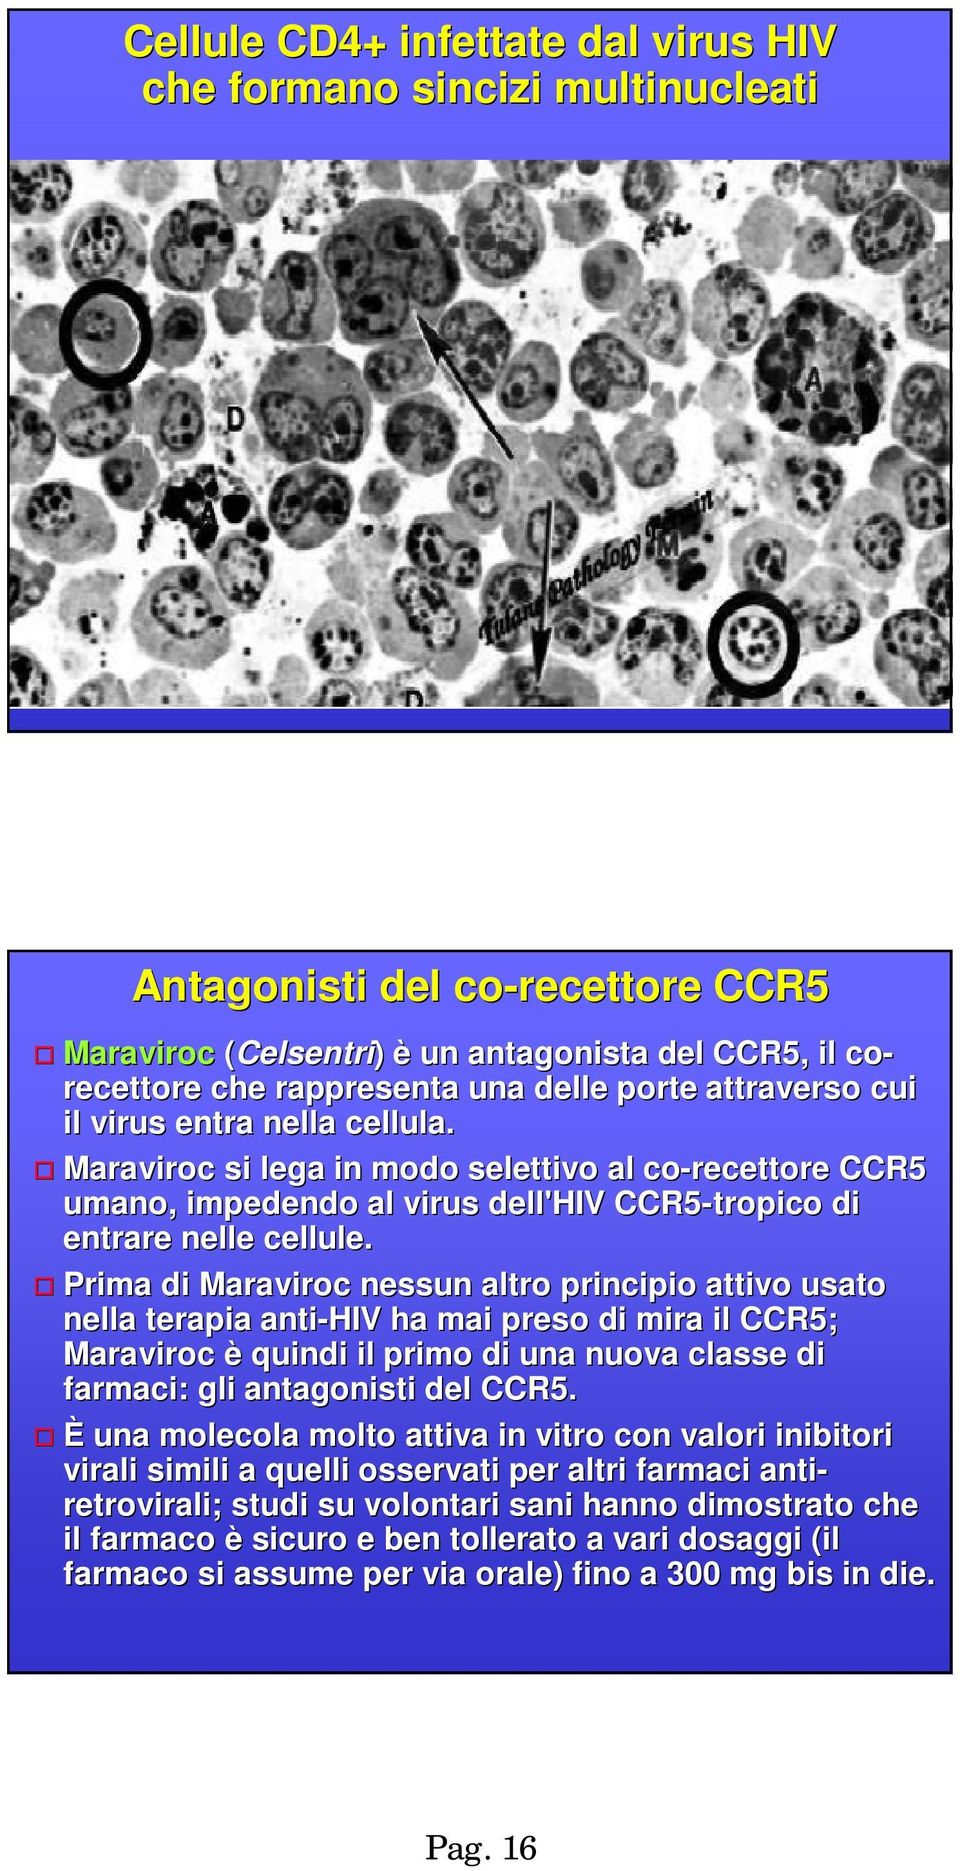 Prima di Maraviroc nessun altro principio attivo usato nella terapia anti-hiv ha mai preso di mira il CCR5; Maraviroc è quindi il primo di una nuova classe di farmaci: gli antagonisti del CCR5.